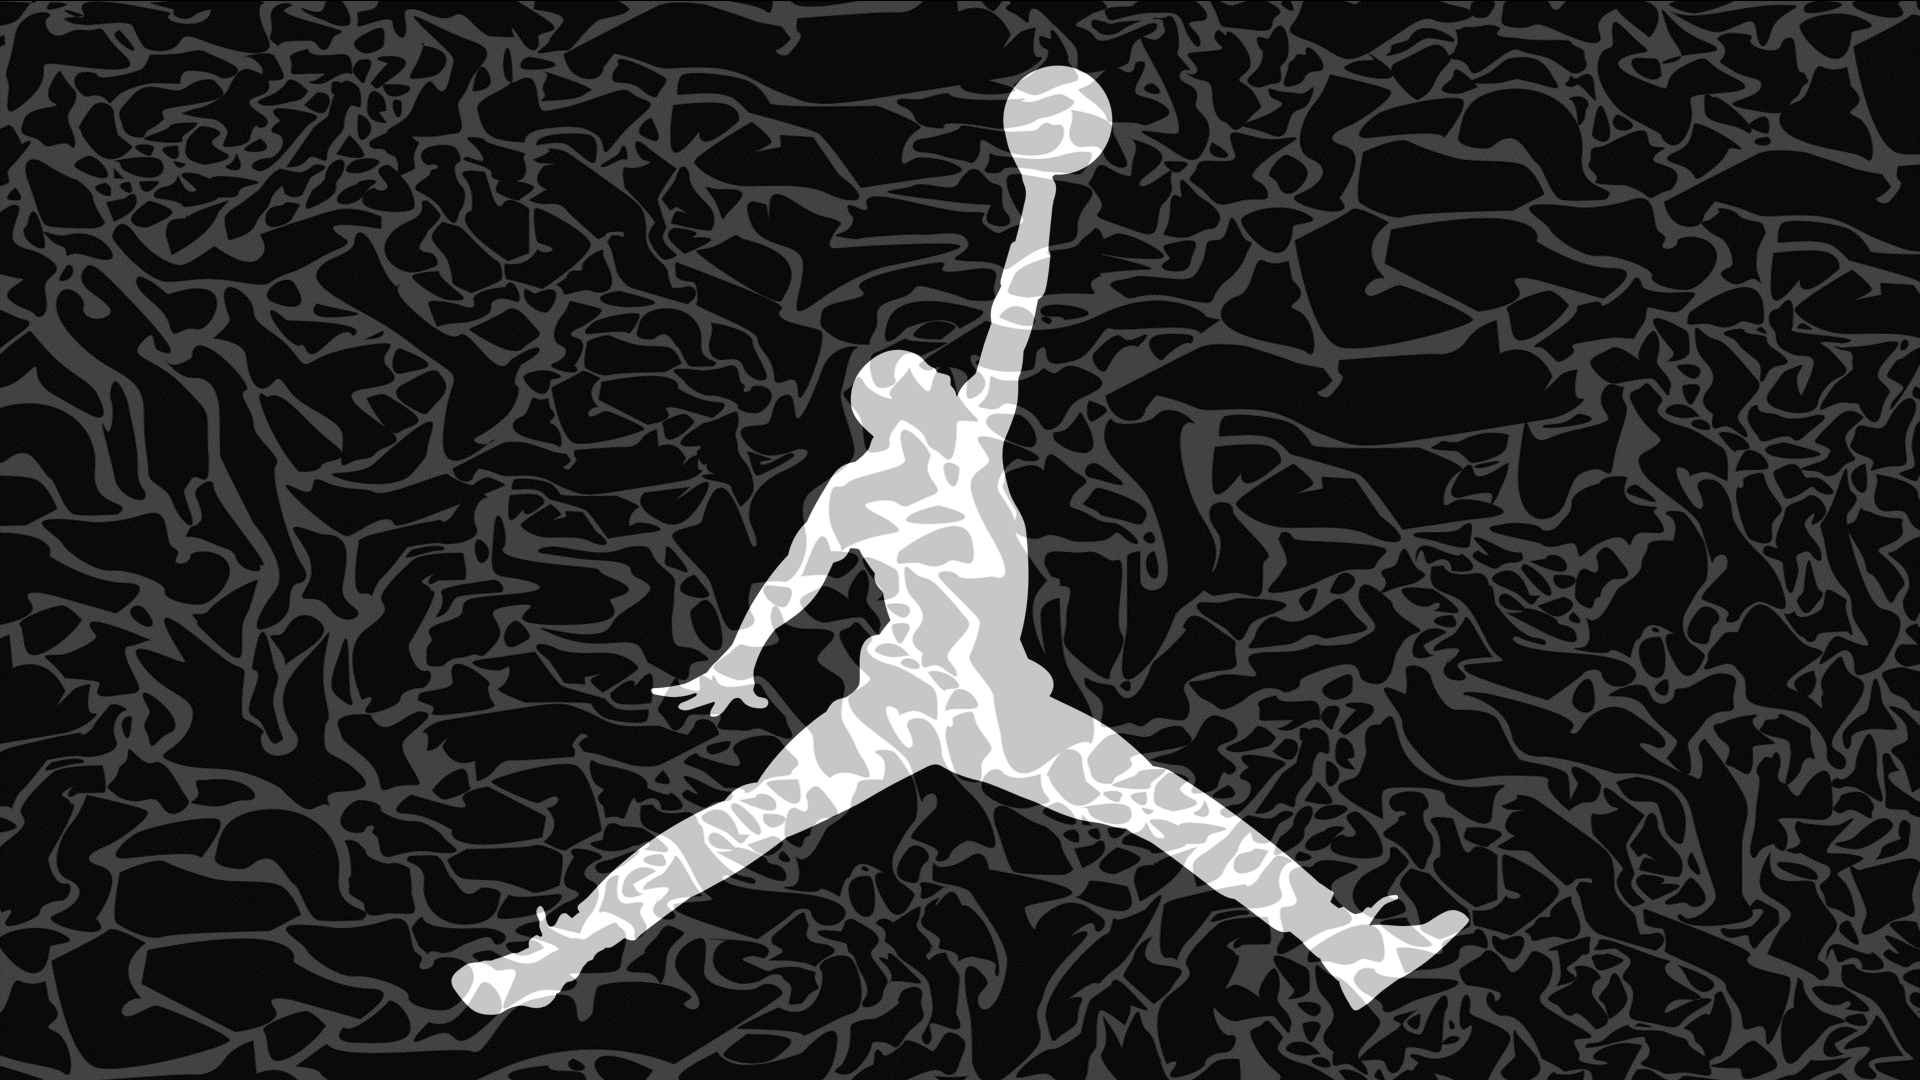 carta da parati logo air jordan,giocatore di pallacanestro,giocatore,palla a mano,calcio,illustrazione